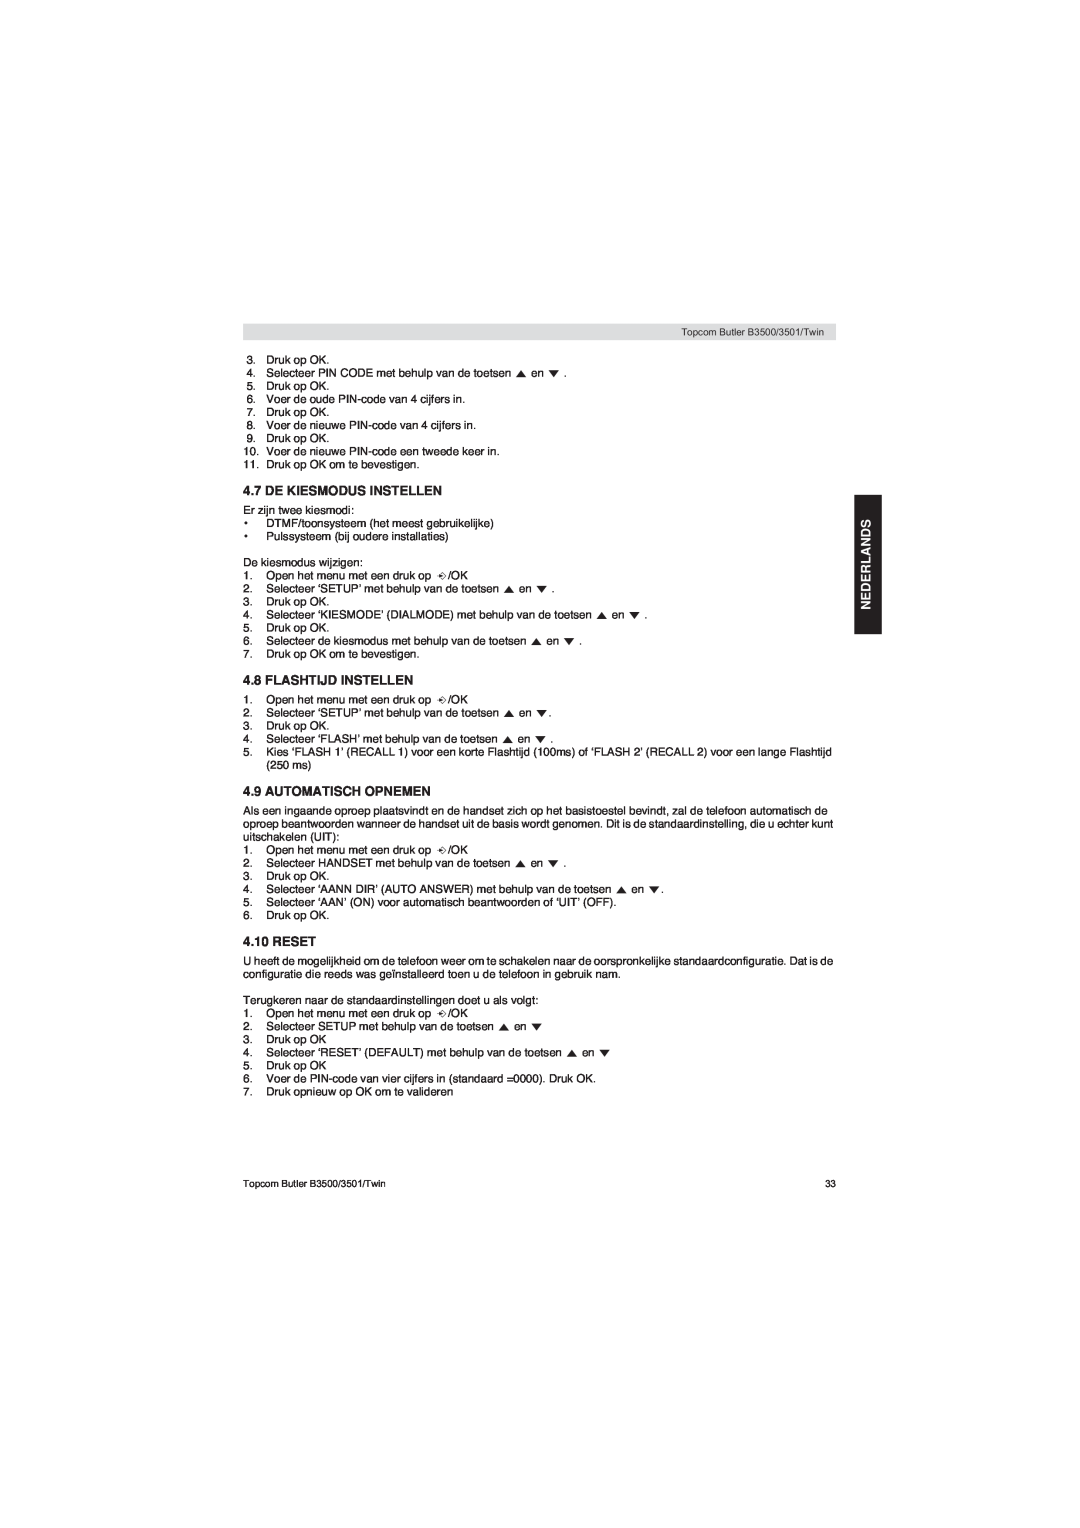 Topcom BUTLER 3500 manual De Kiesmodus Instellen, Flashtijd Instellen, Automatisch Opnemen, Reset, Nederlands 